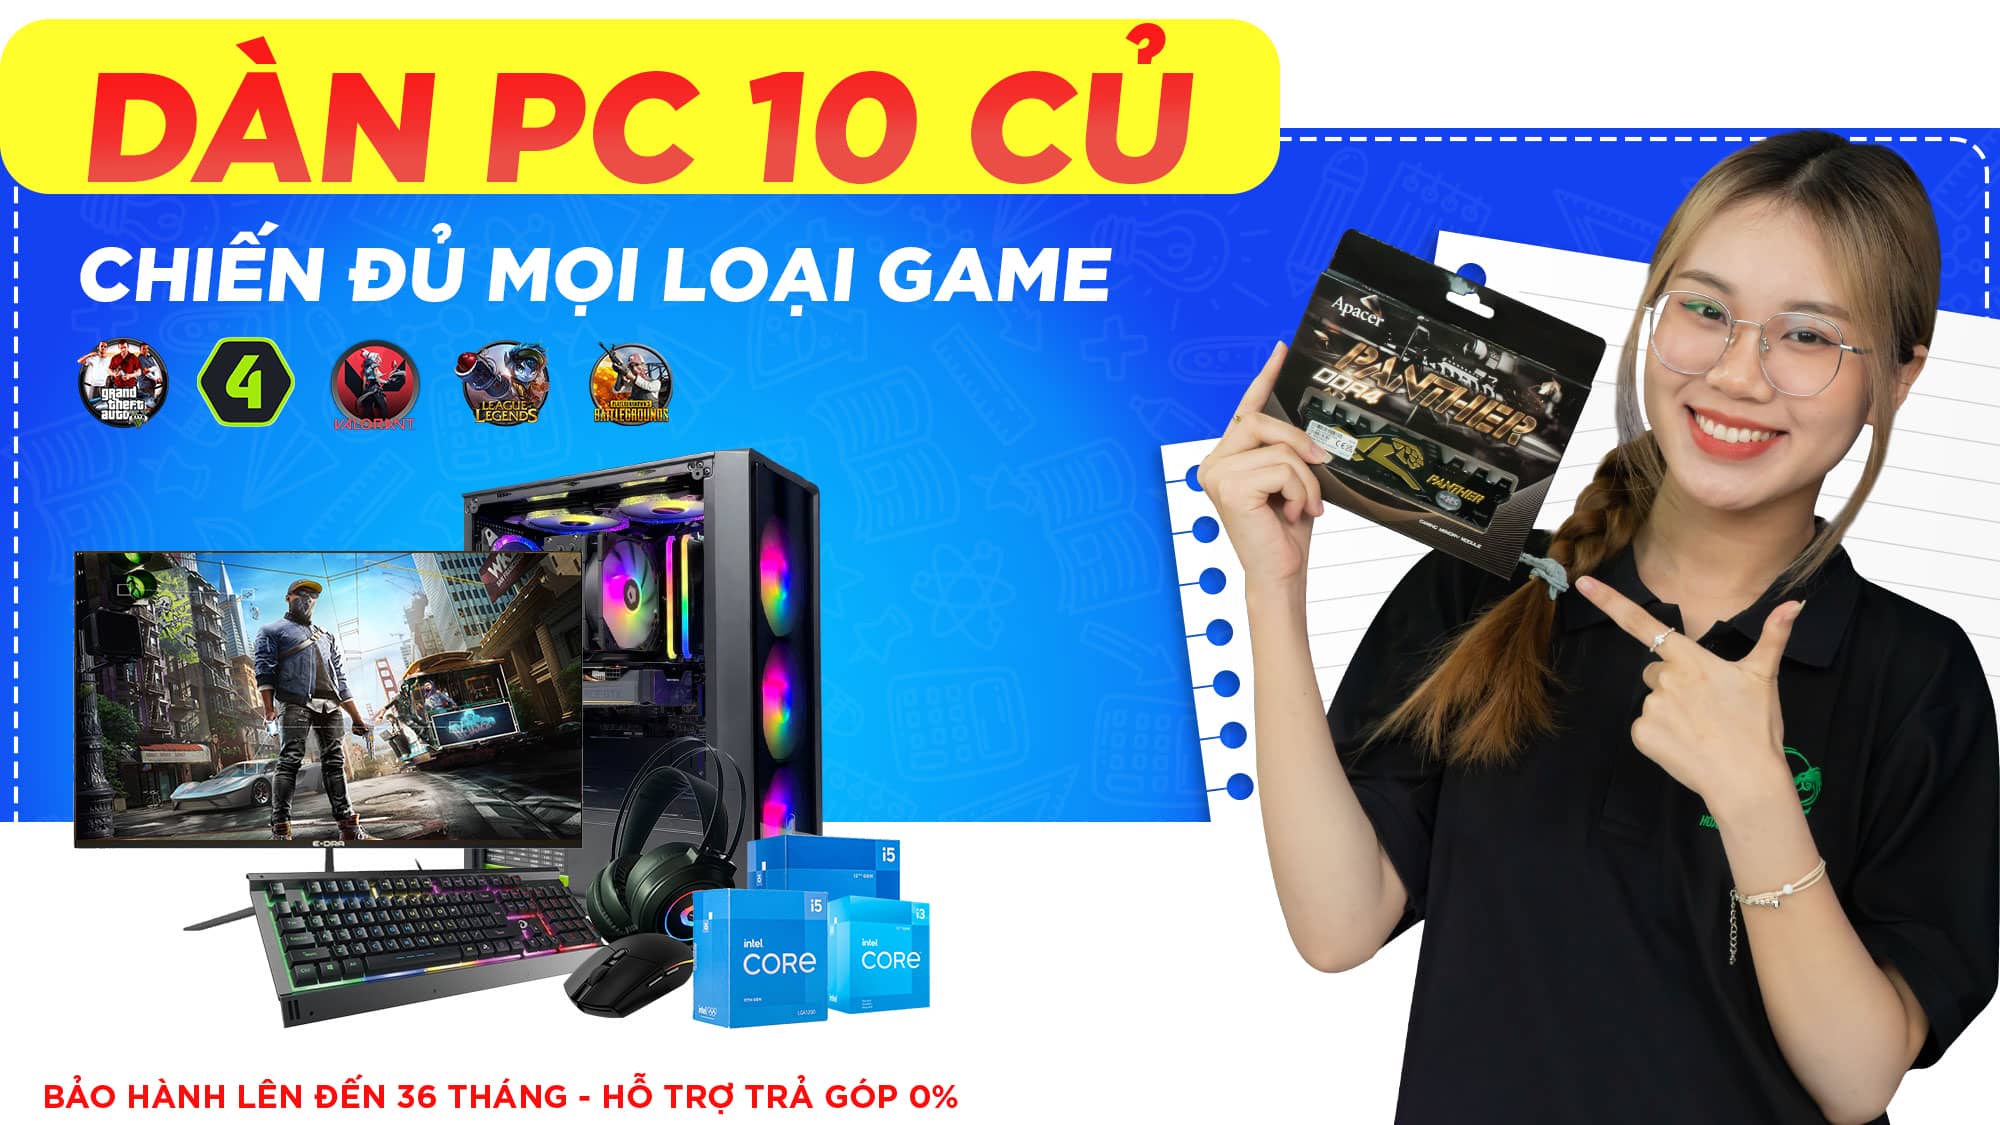 Dàn PC Gaming 10 củ, chiến đủ mọi loại game!